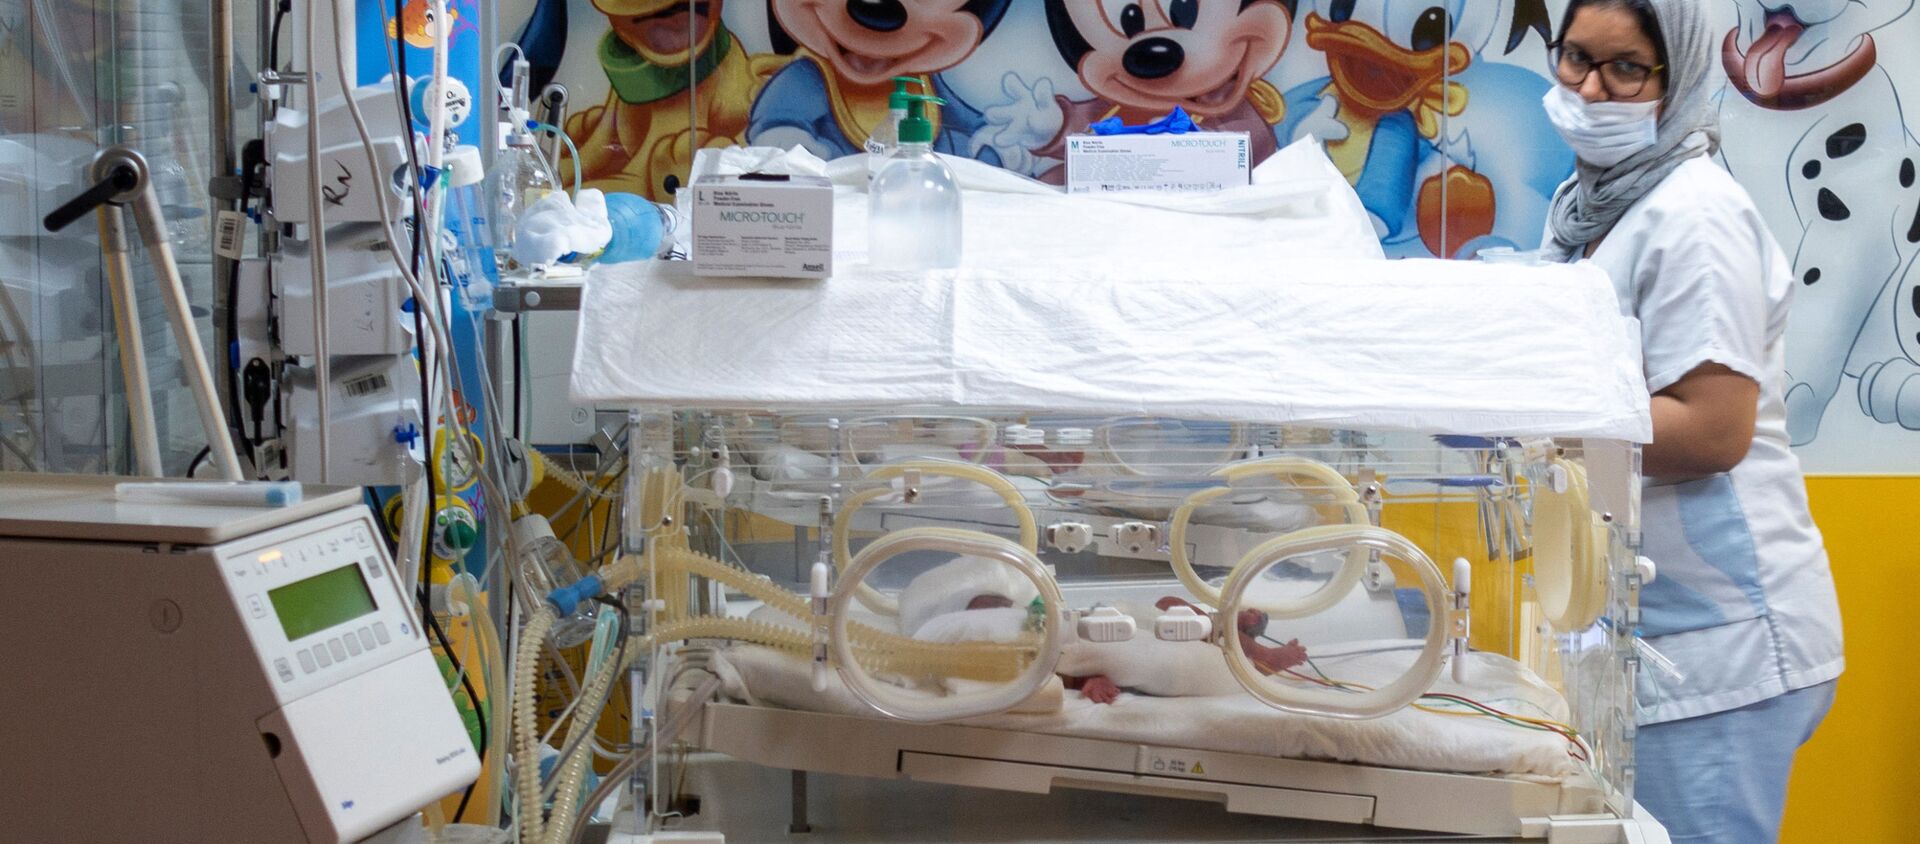 Сотрудник медперсонала проверяет одного из девяти младенцев, содержащегося в кувезе в клинике Касабланки (Марокко). 05 мая 2021 года - Sputnik Кыргызстан, 1920, 06.05.2021